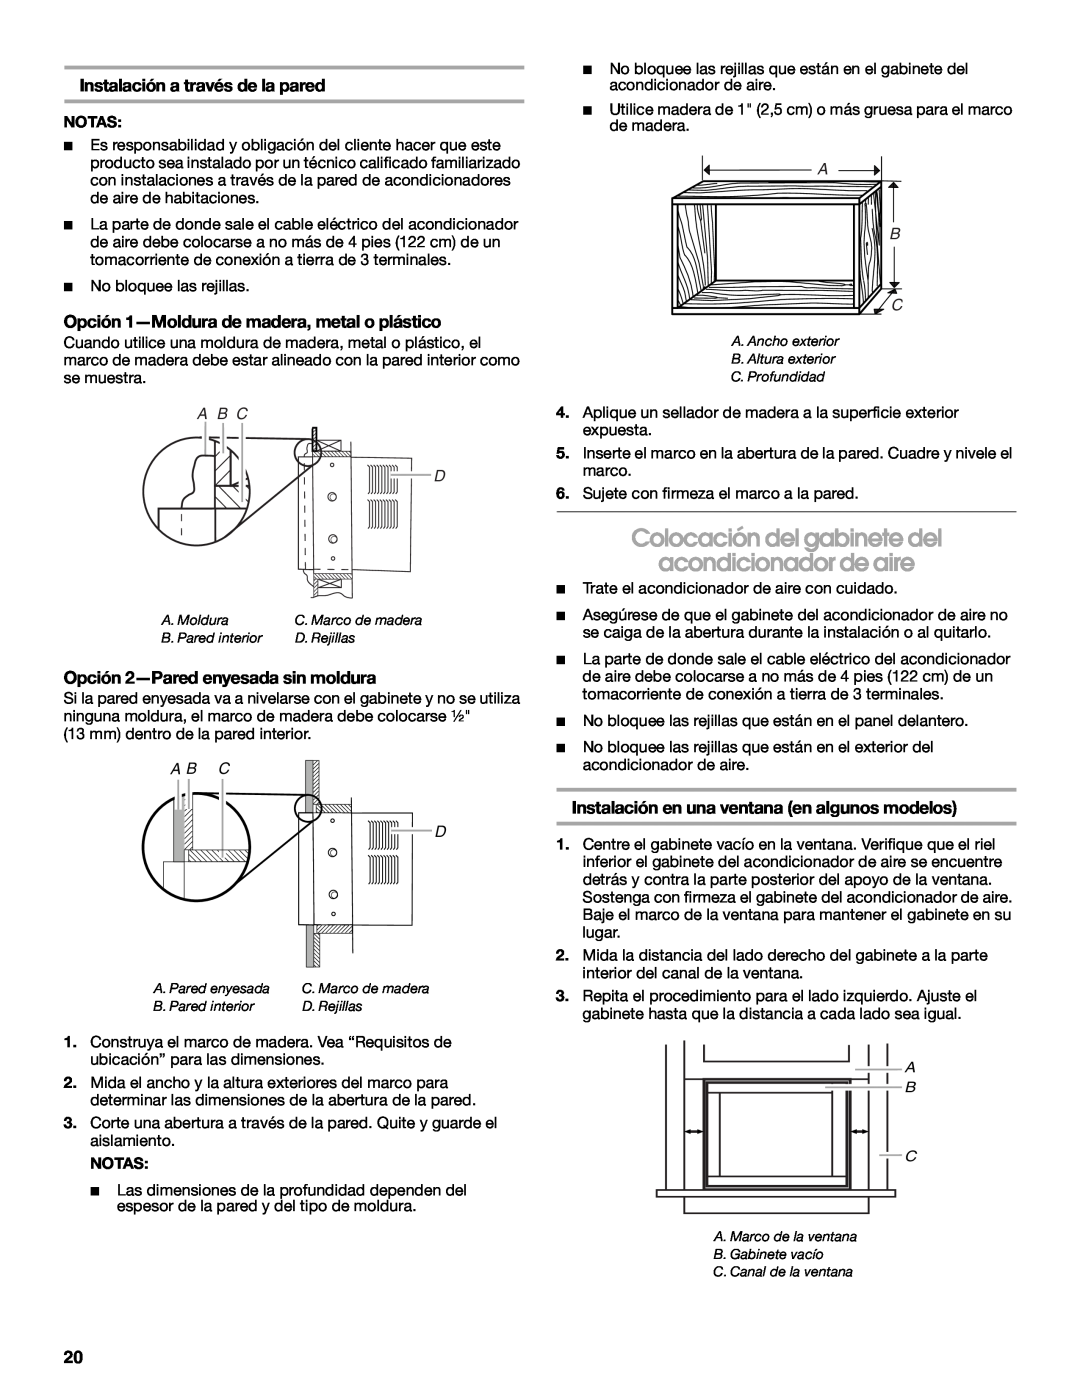 Whirlpool ACE082XR0 manual Colocación del gabinete del, acondicionador de aire, Opción 1-Moldurade madera, metal o plástico 